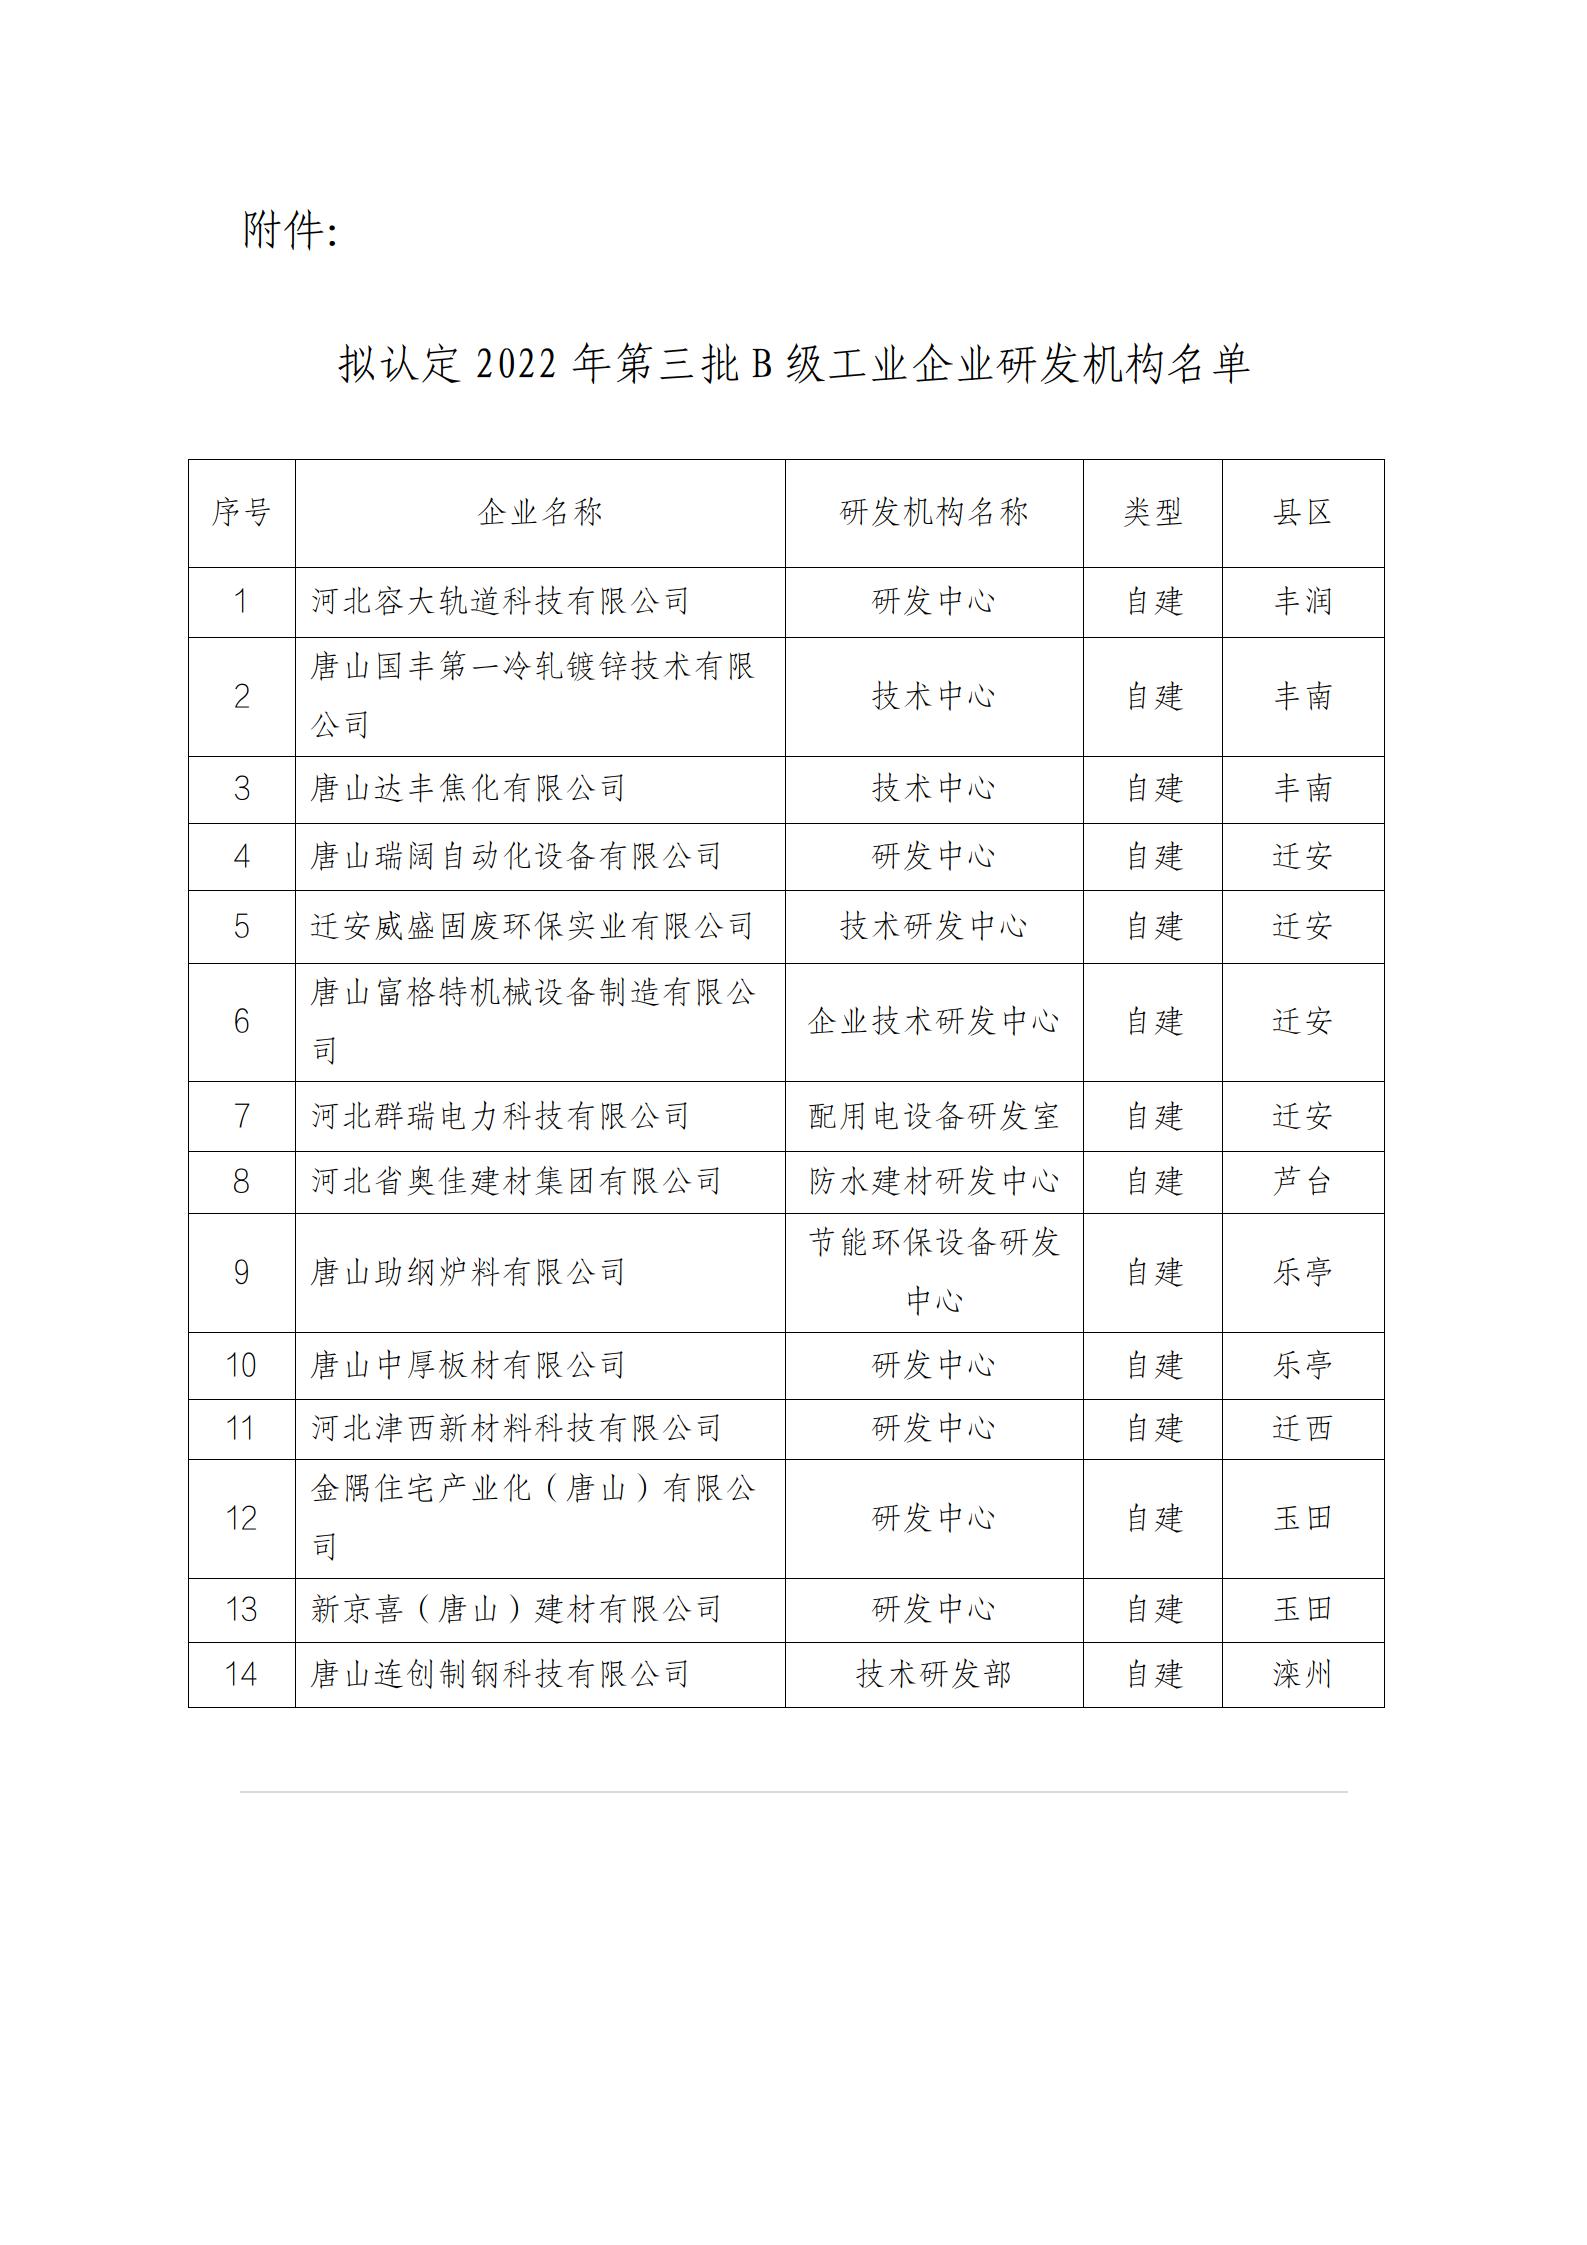 唐山2022年第三批B级工业企业研发机构拟认定名单公示